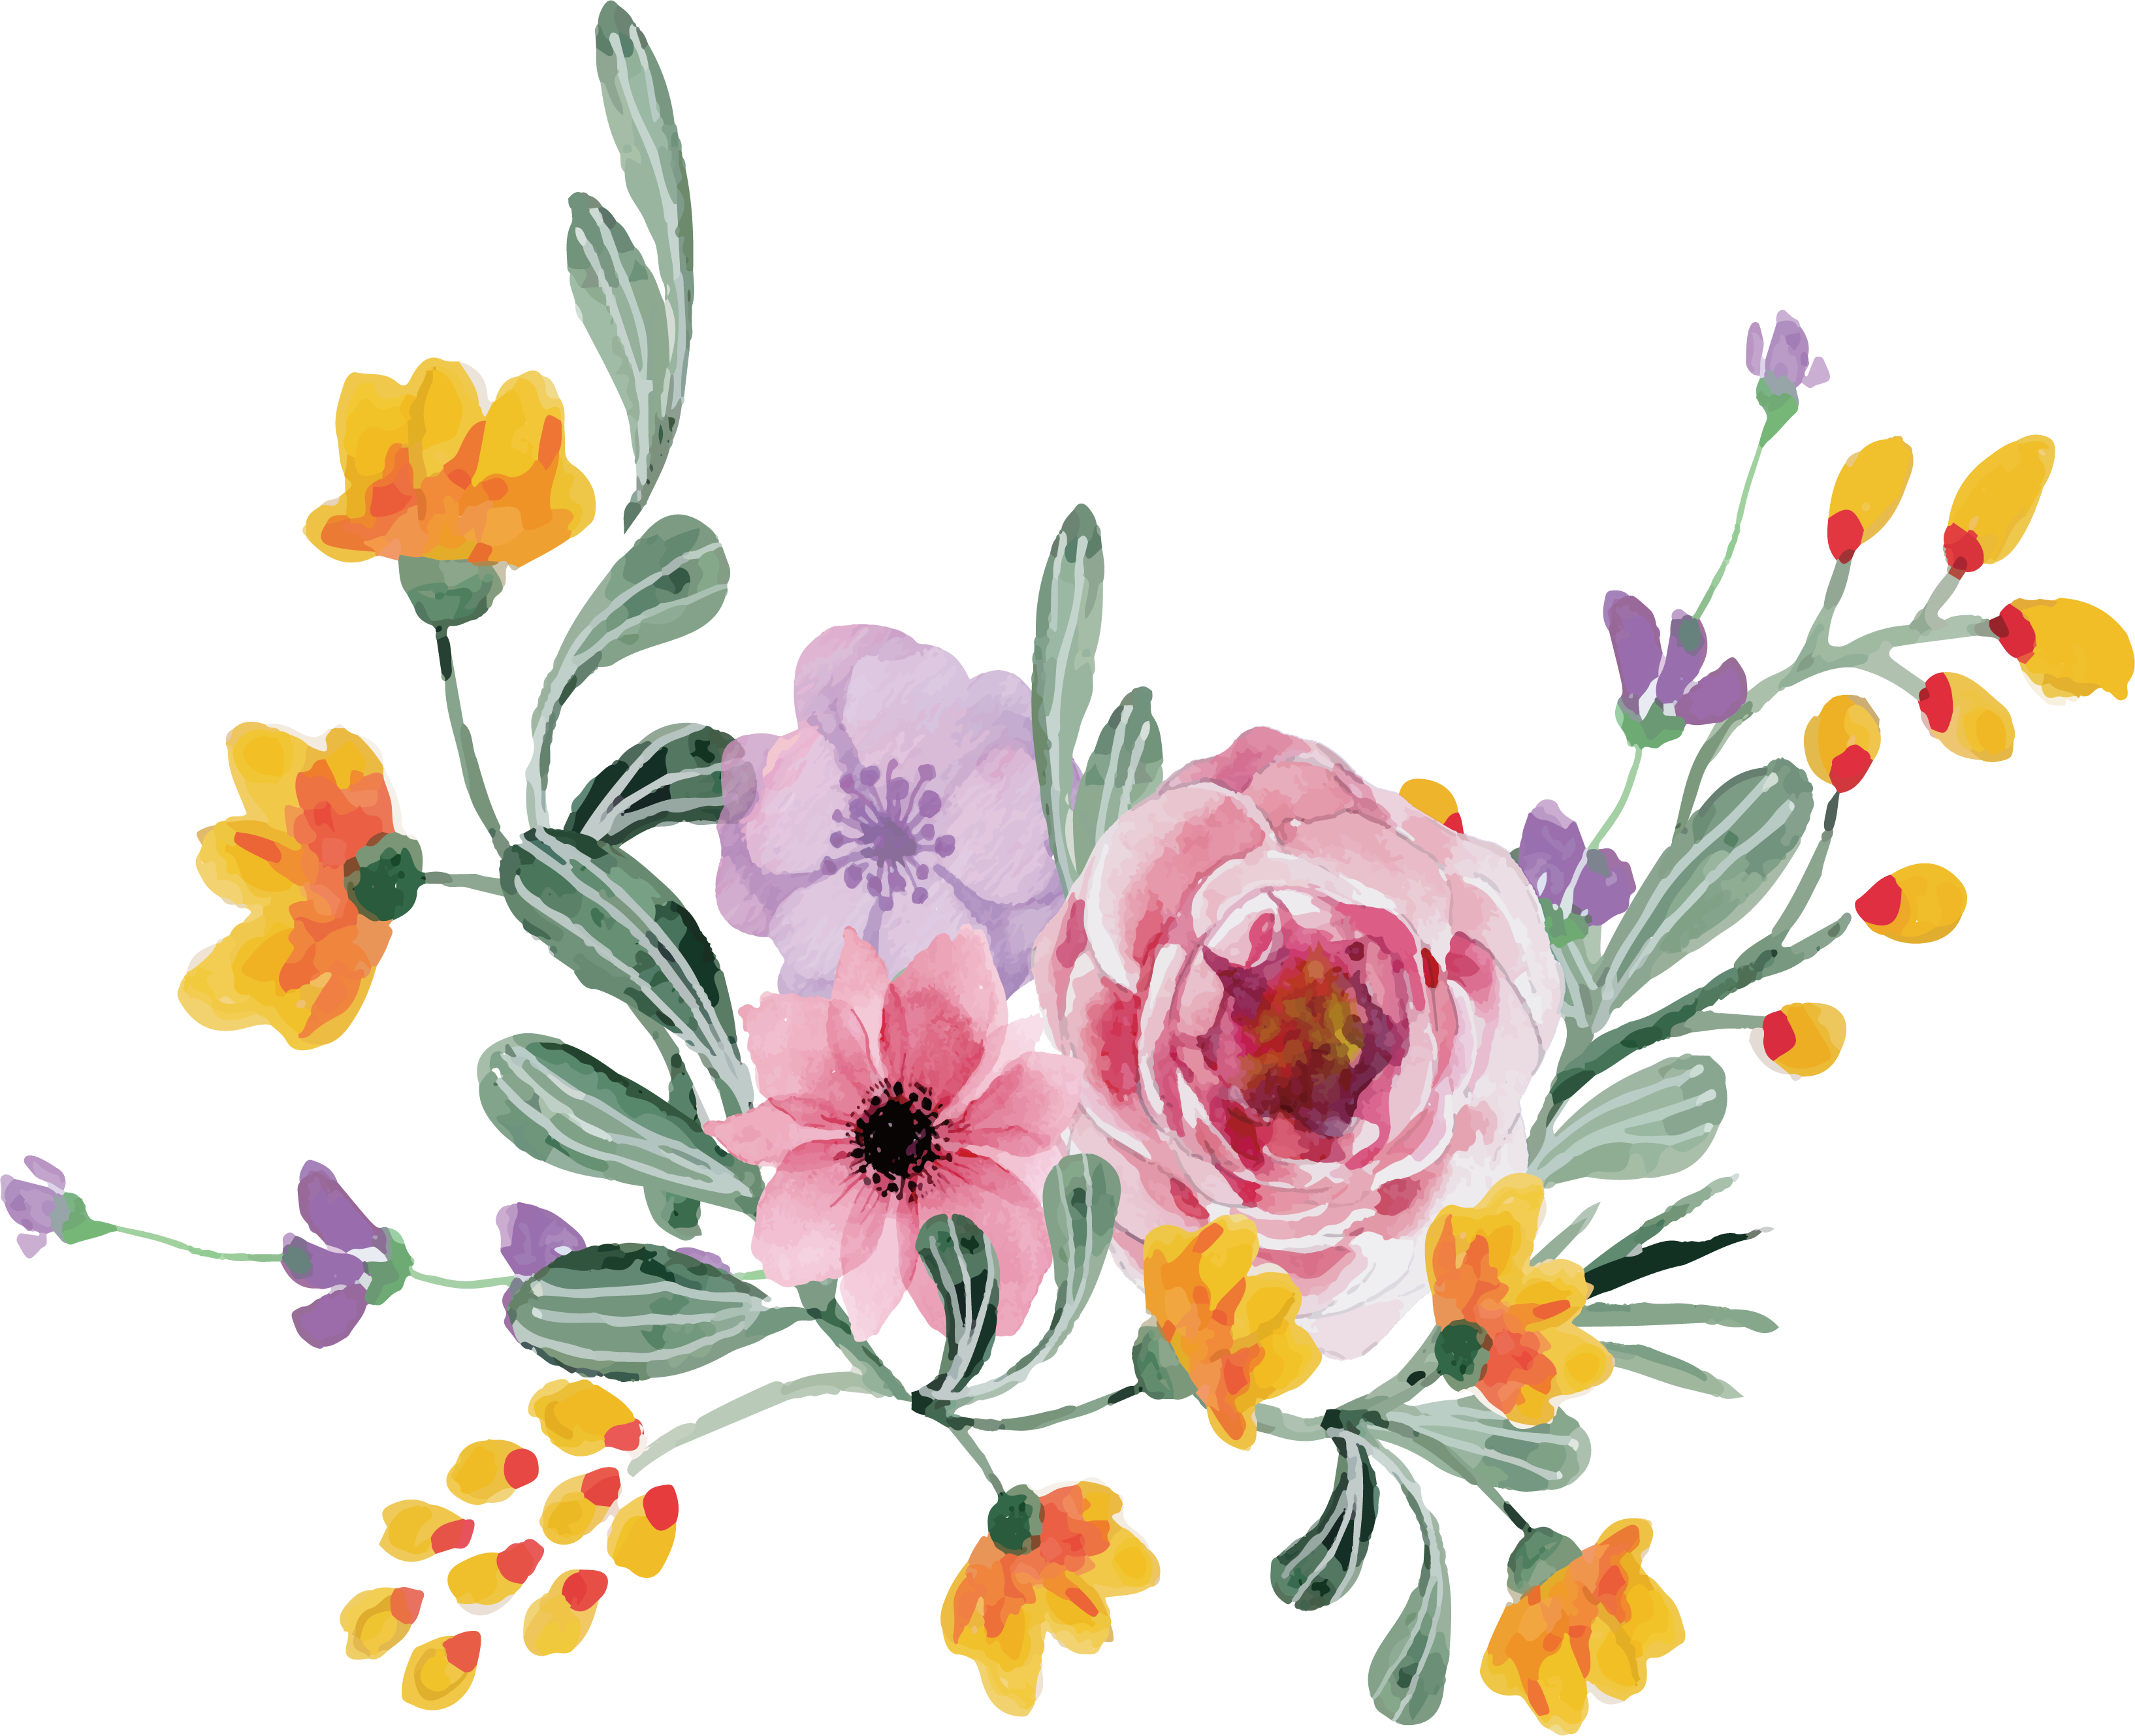 Floral Design Rosa Multiflora Flower Bouquet - March Flowers Clipart (3269x2658)